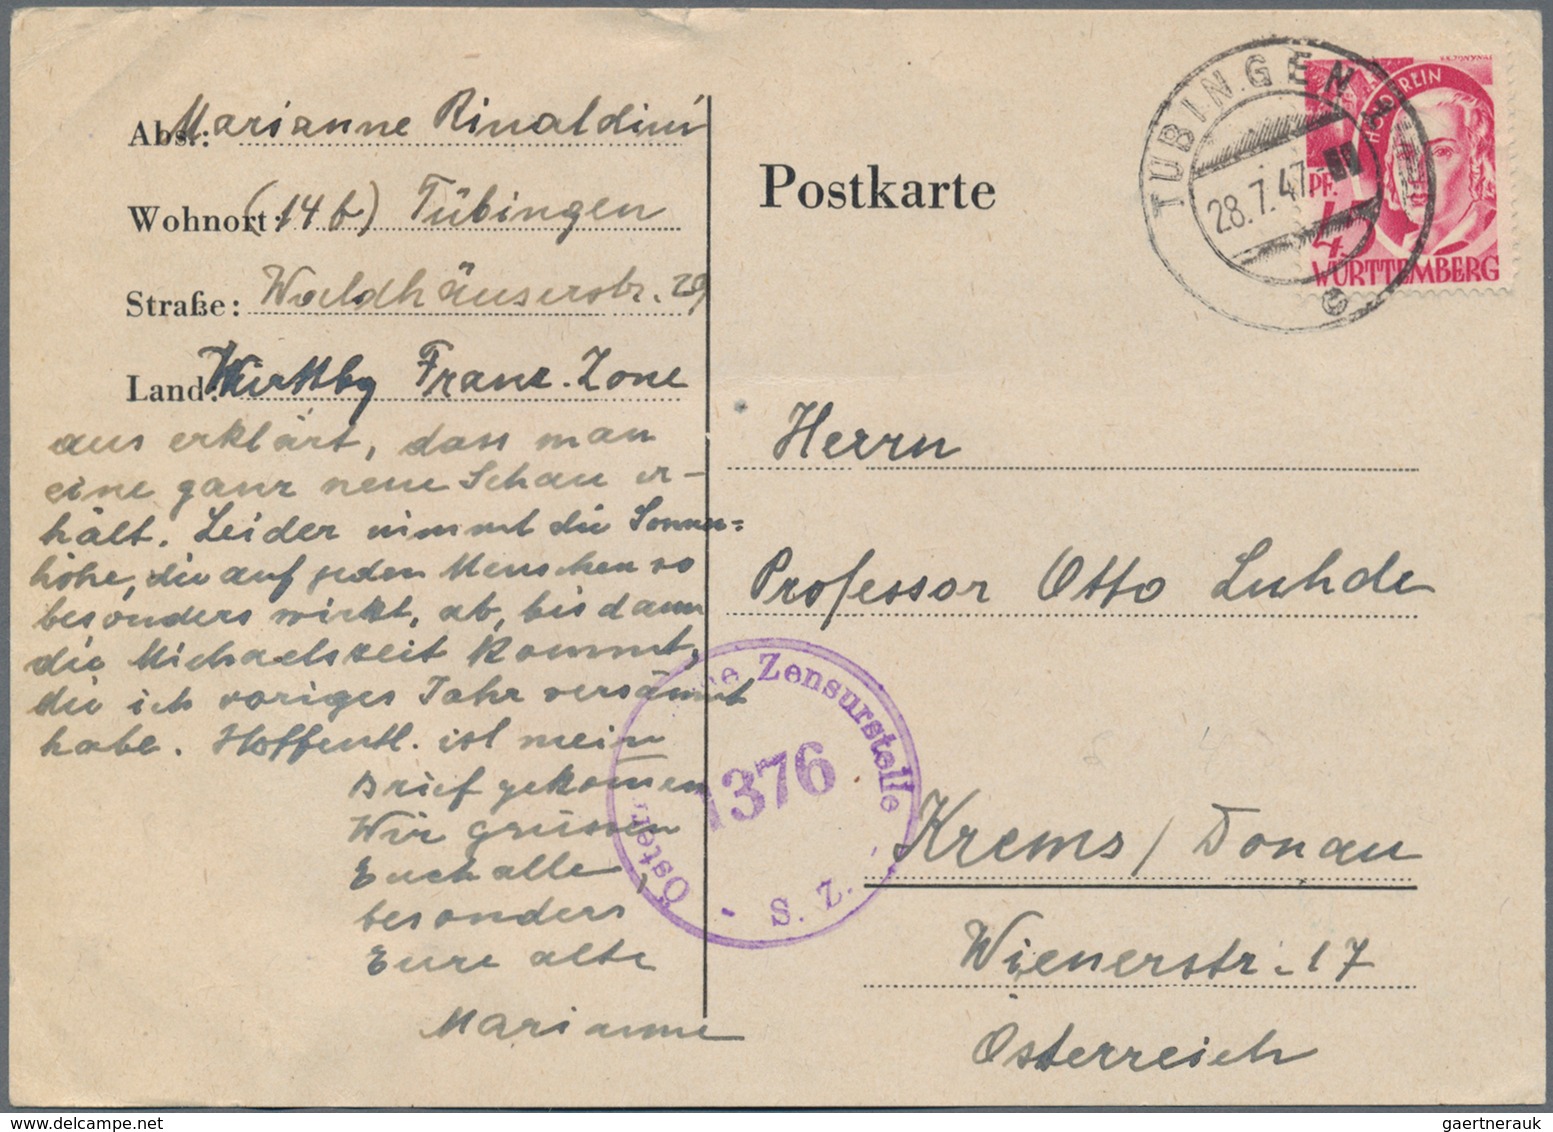 Französische Zone: 1946/1950, vielseitiger Bestand von ca. 660 Briefen und Karten mit Allg.Ausgabe u